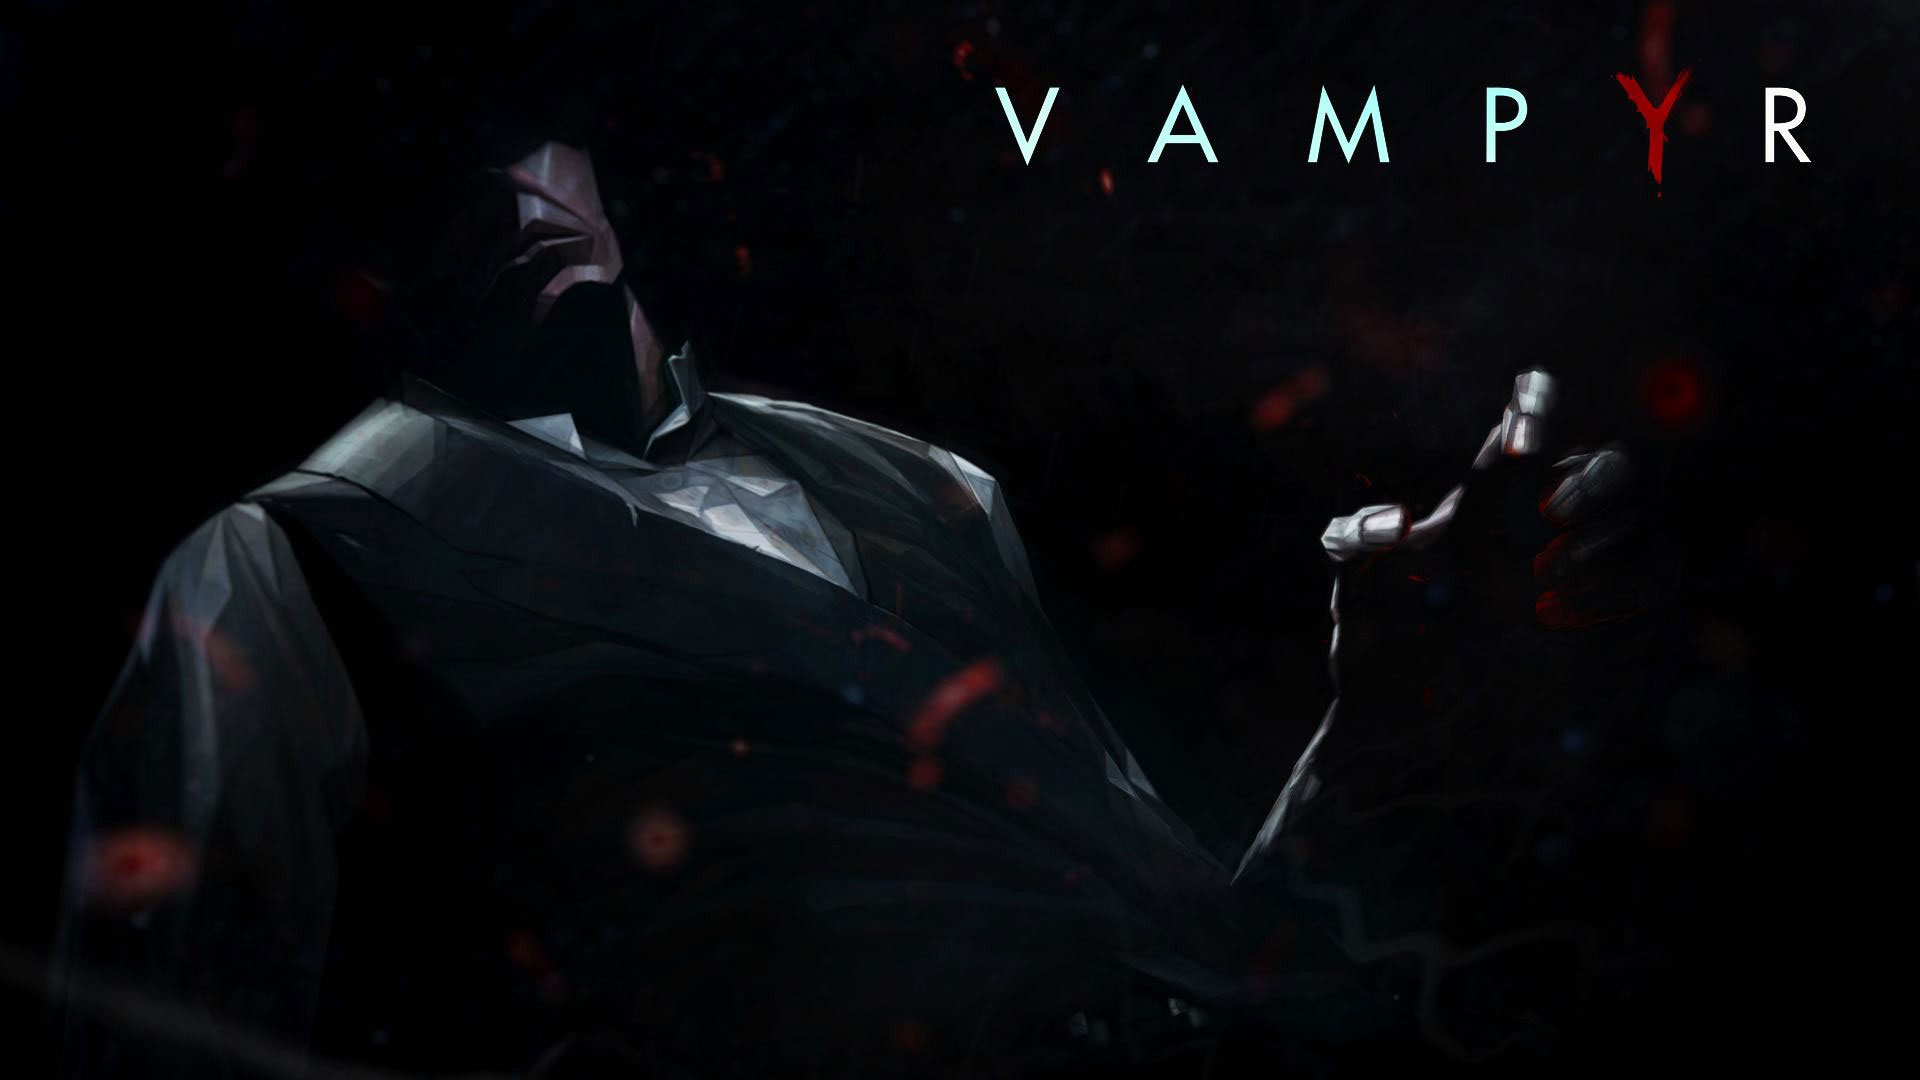 Vampyr Wallpapers in Ultra HD | 4K - Gameranx